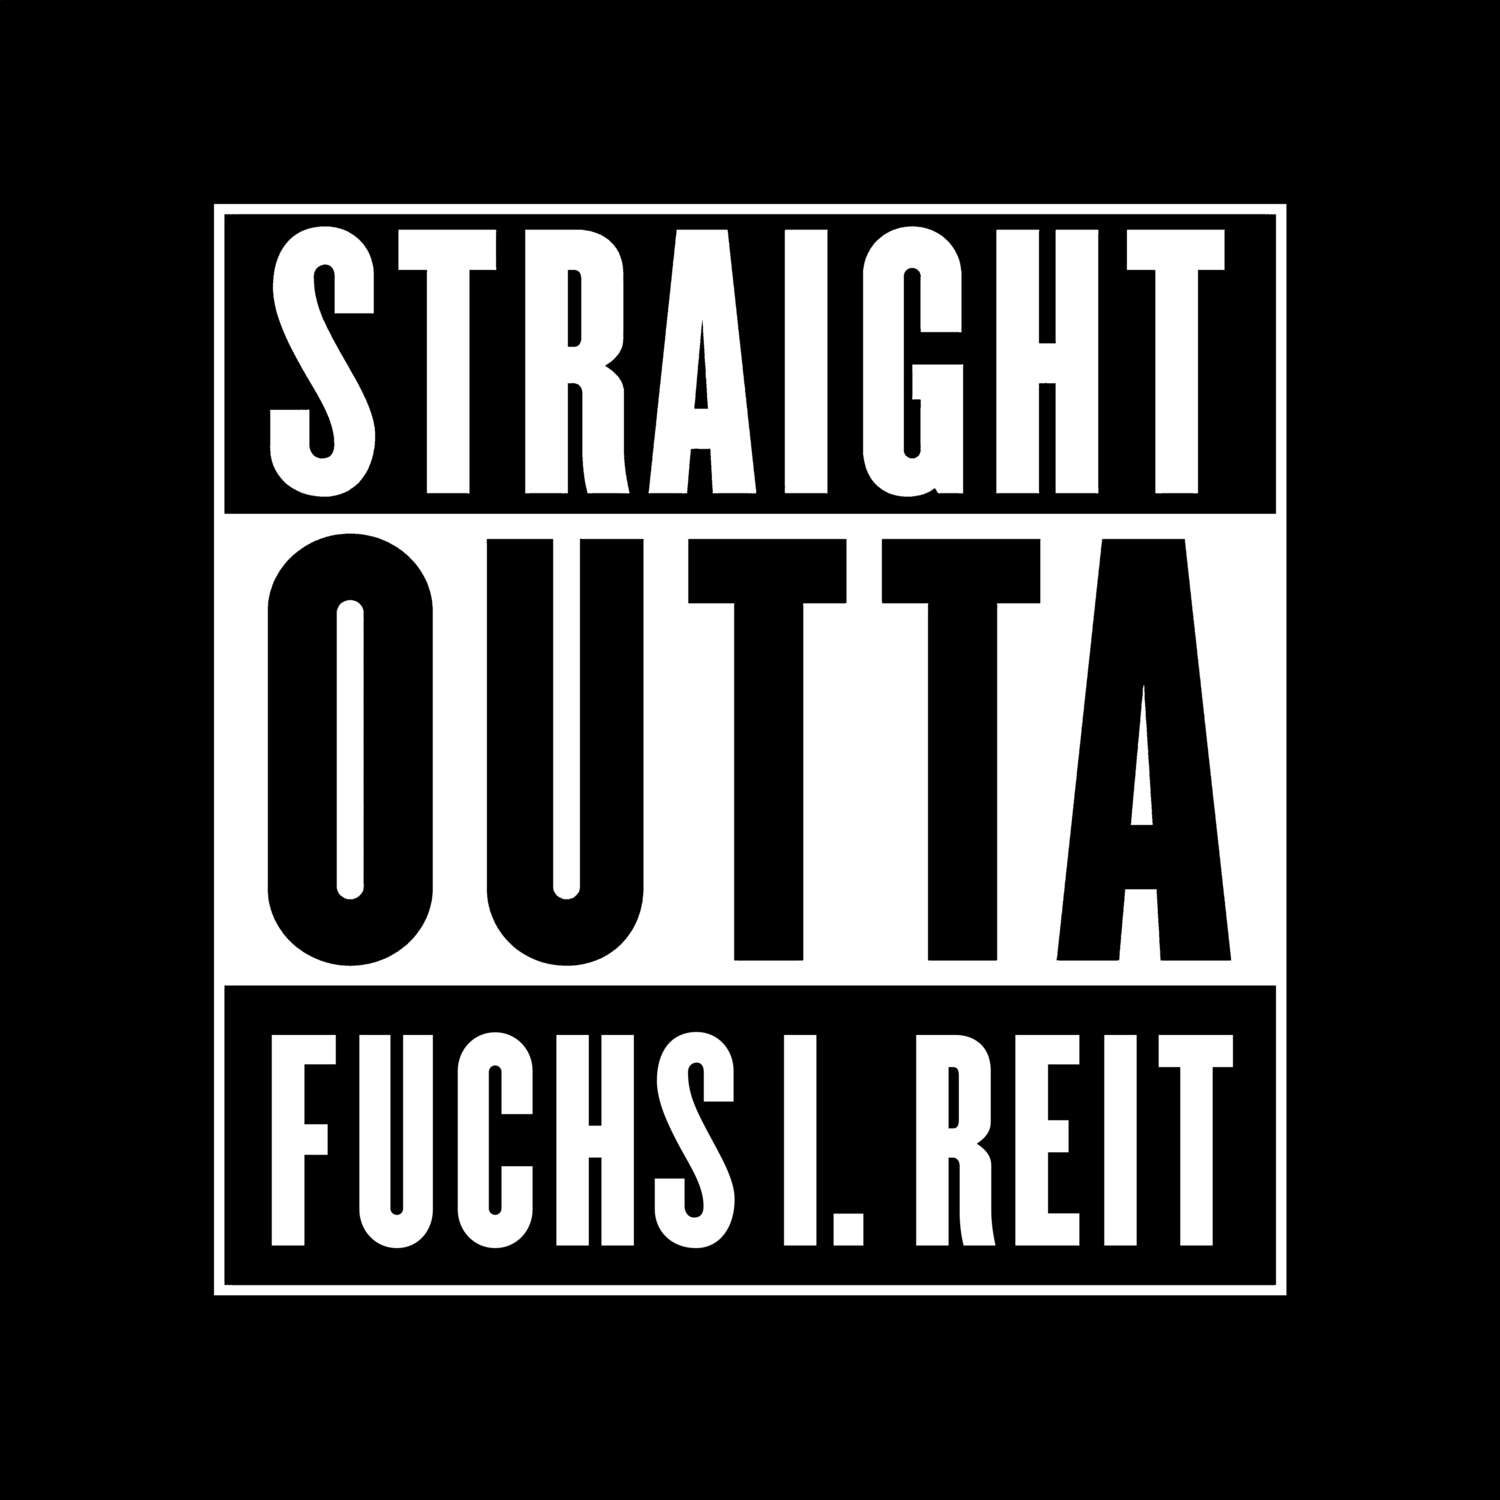 Fuchs i. Reit T-Shirt »Straight Outta«